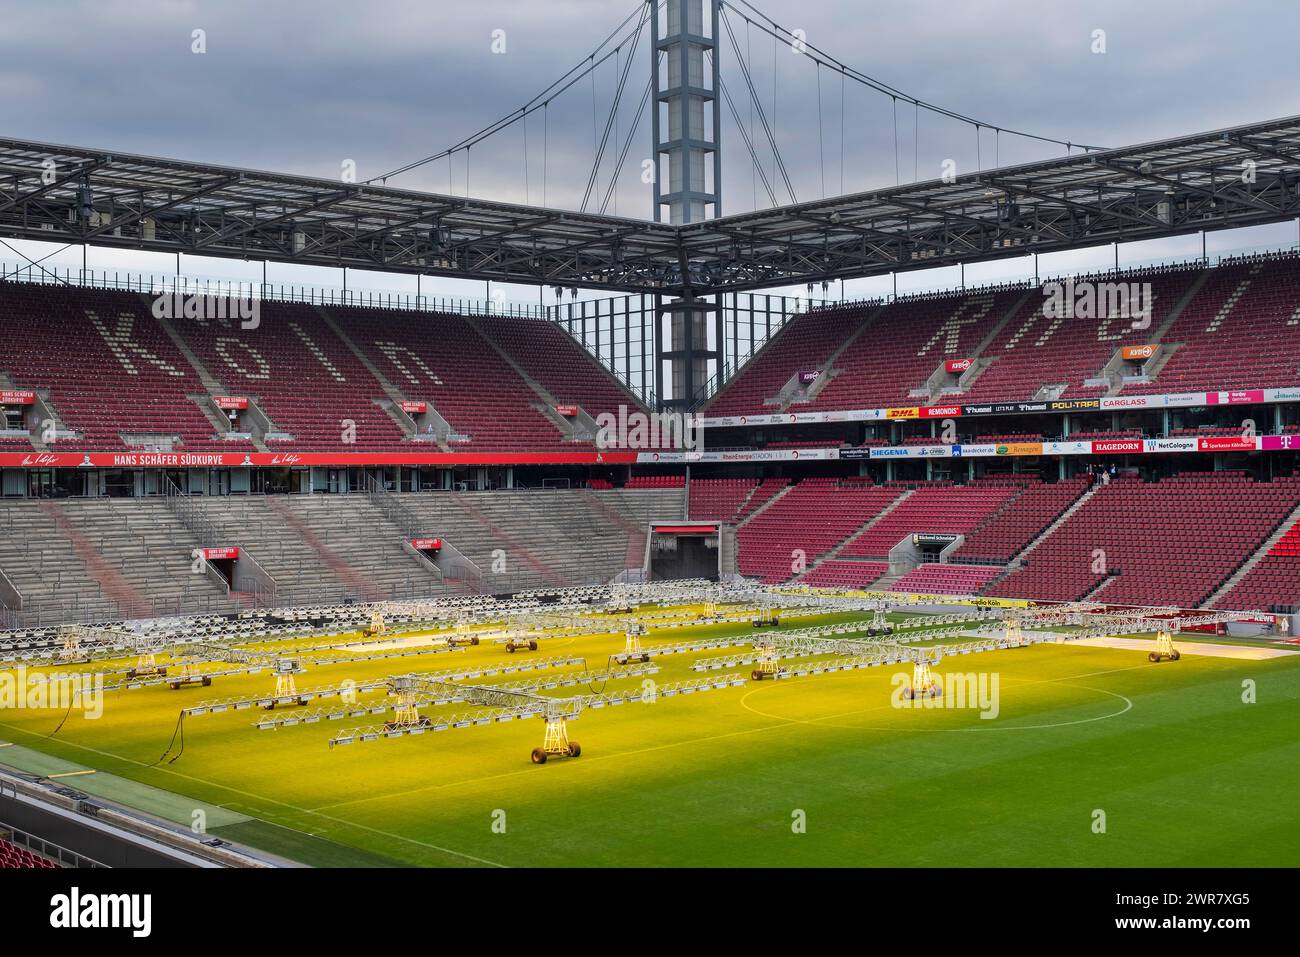 Le stade RheinEnergie est l'un des stades des Championnats d'Europe de football 2024. Le terrain du stade est maintenu avec un éclairage artificiel Banque D'Images